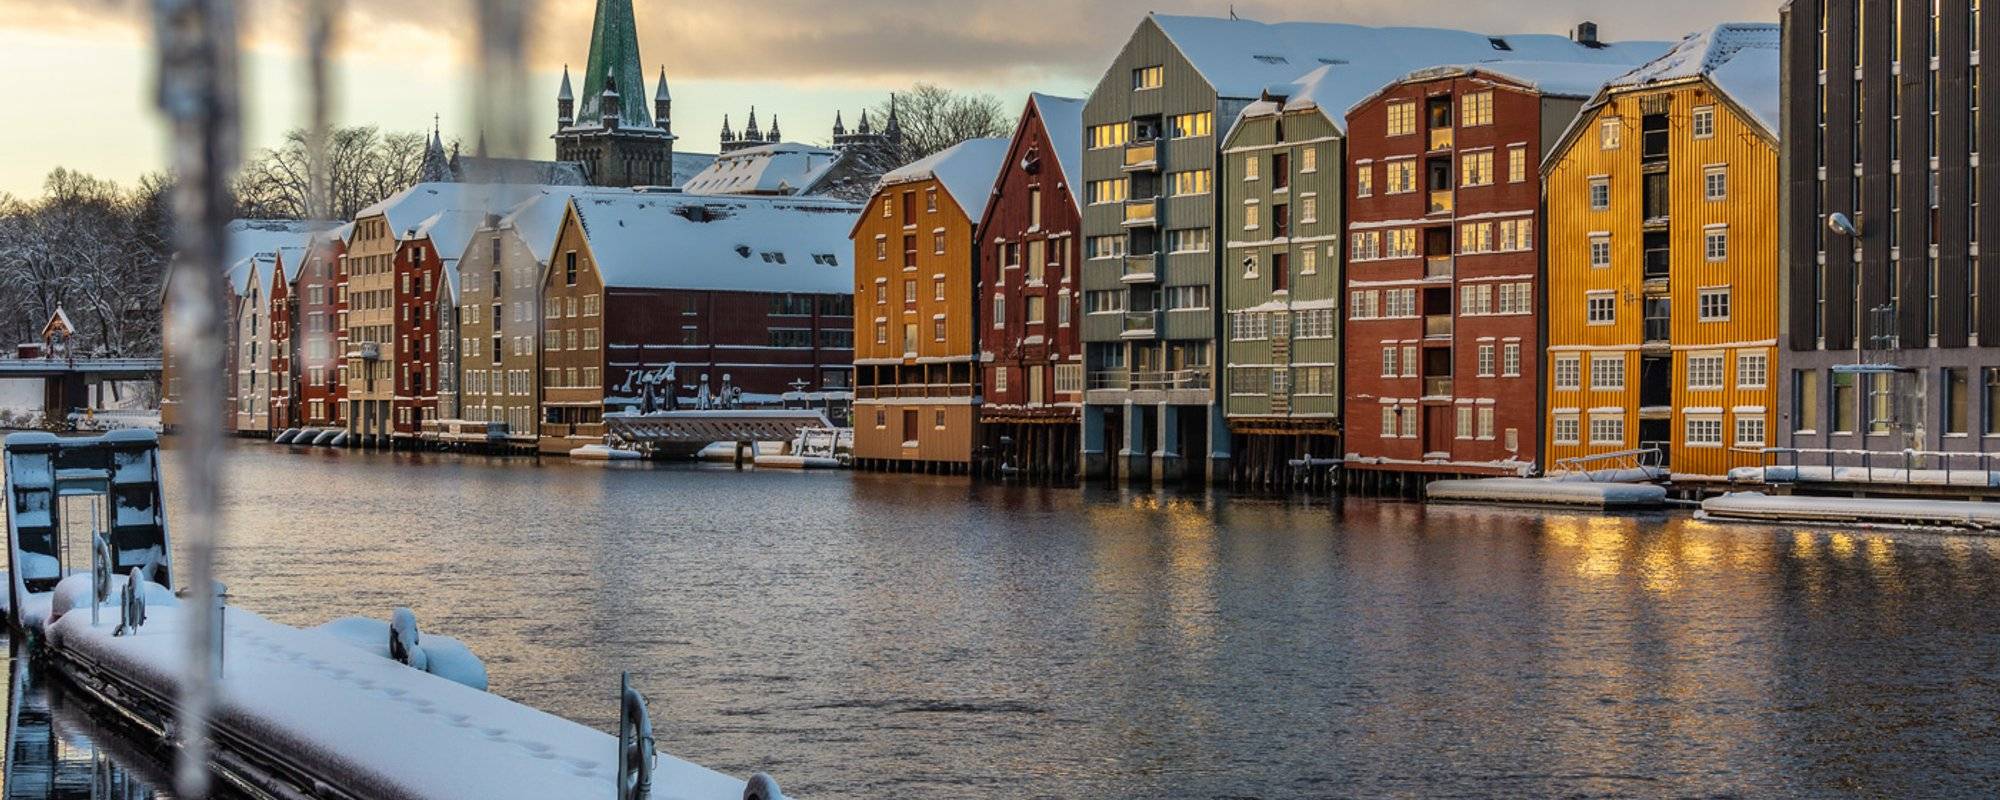 Travel Norway #23 - Wintertime in Trondheim - short trip around center.